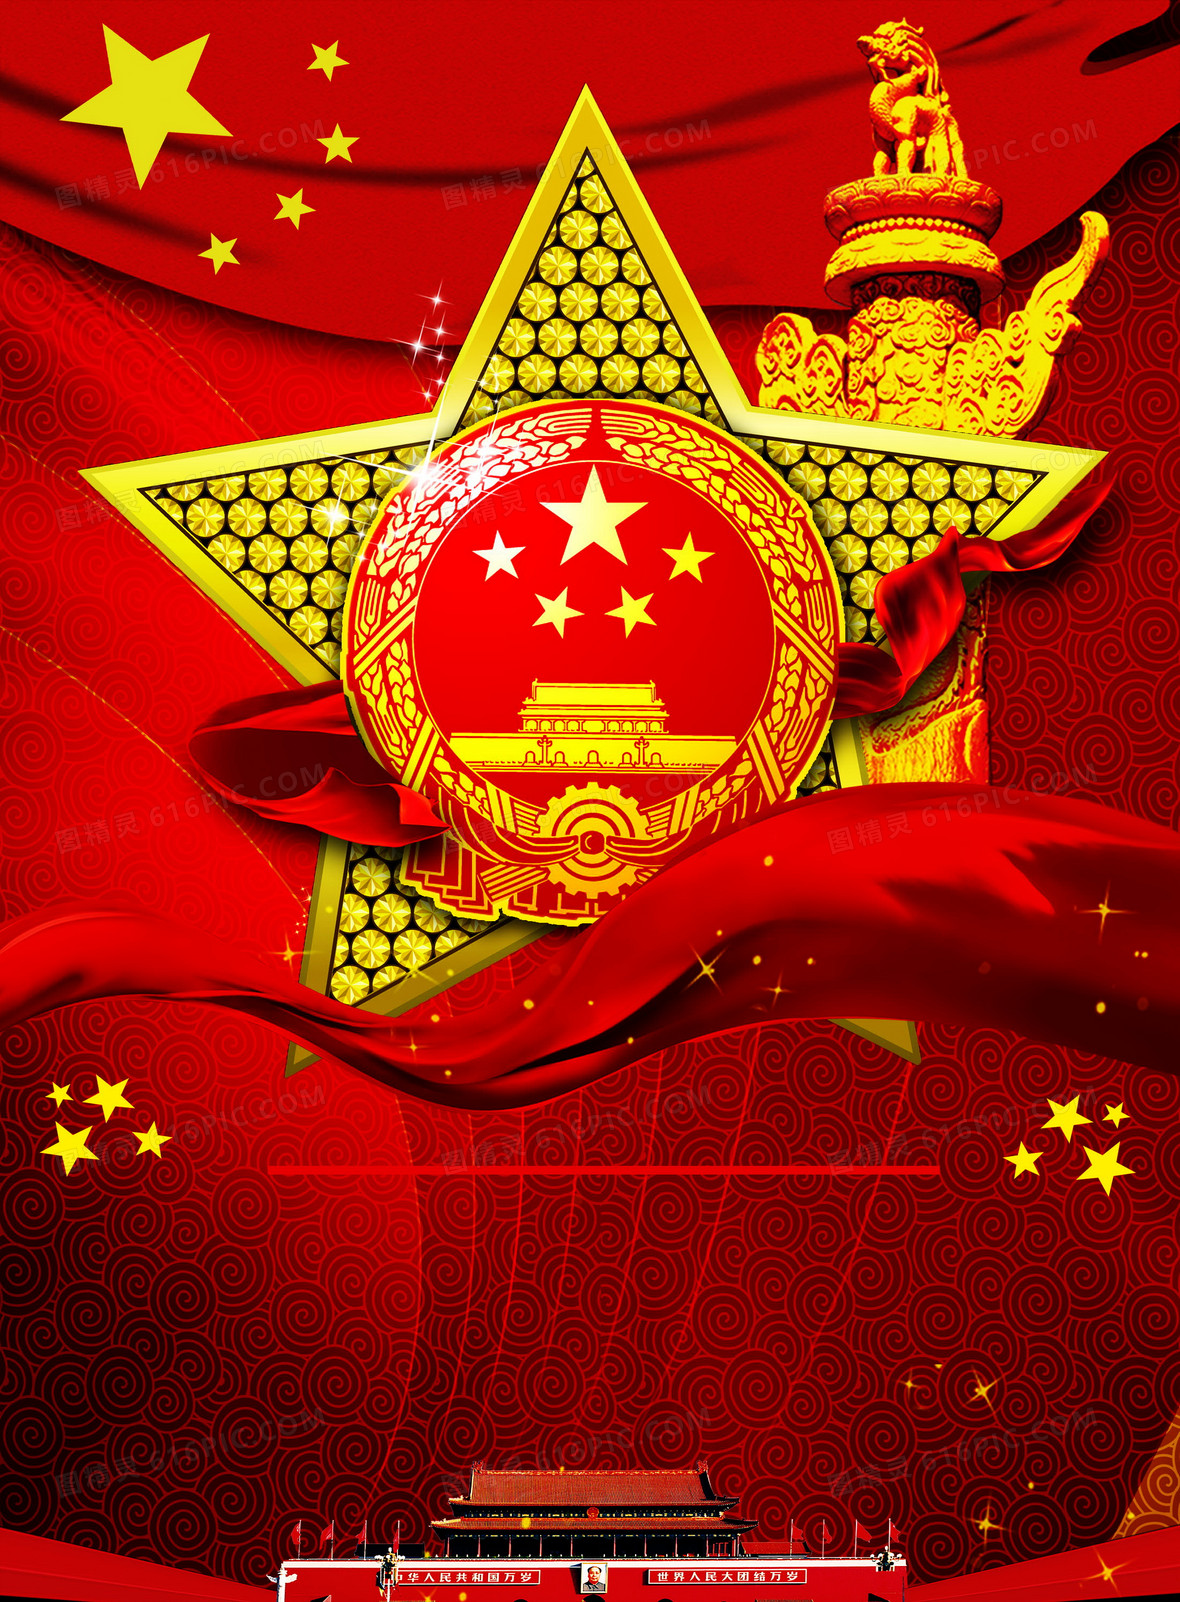 关键词:              红色国徽政府海报背景